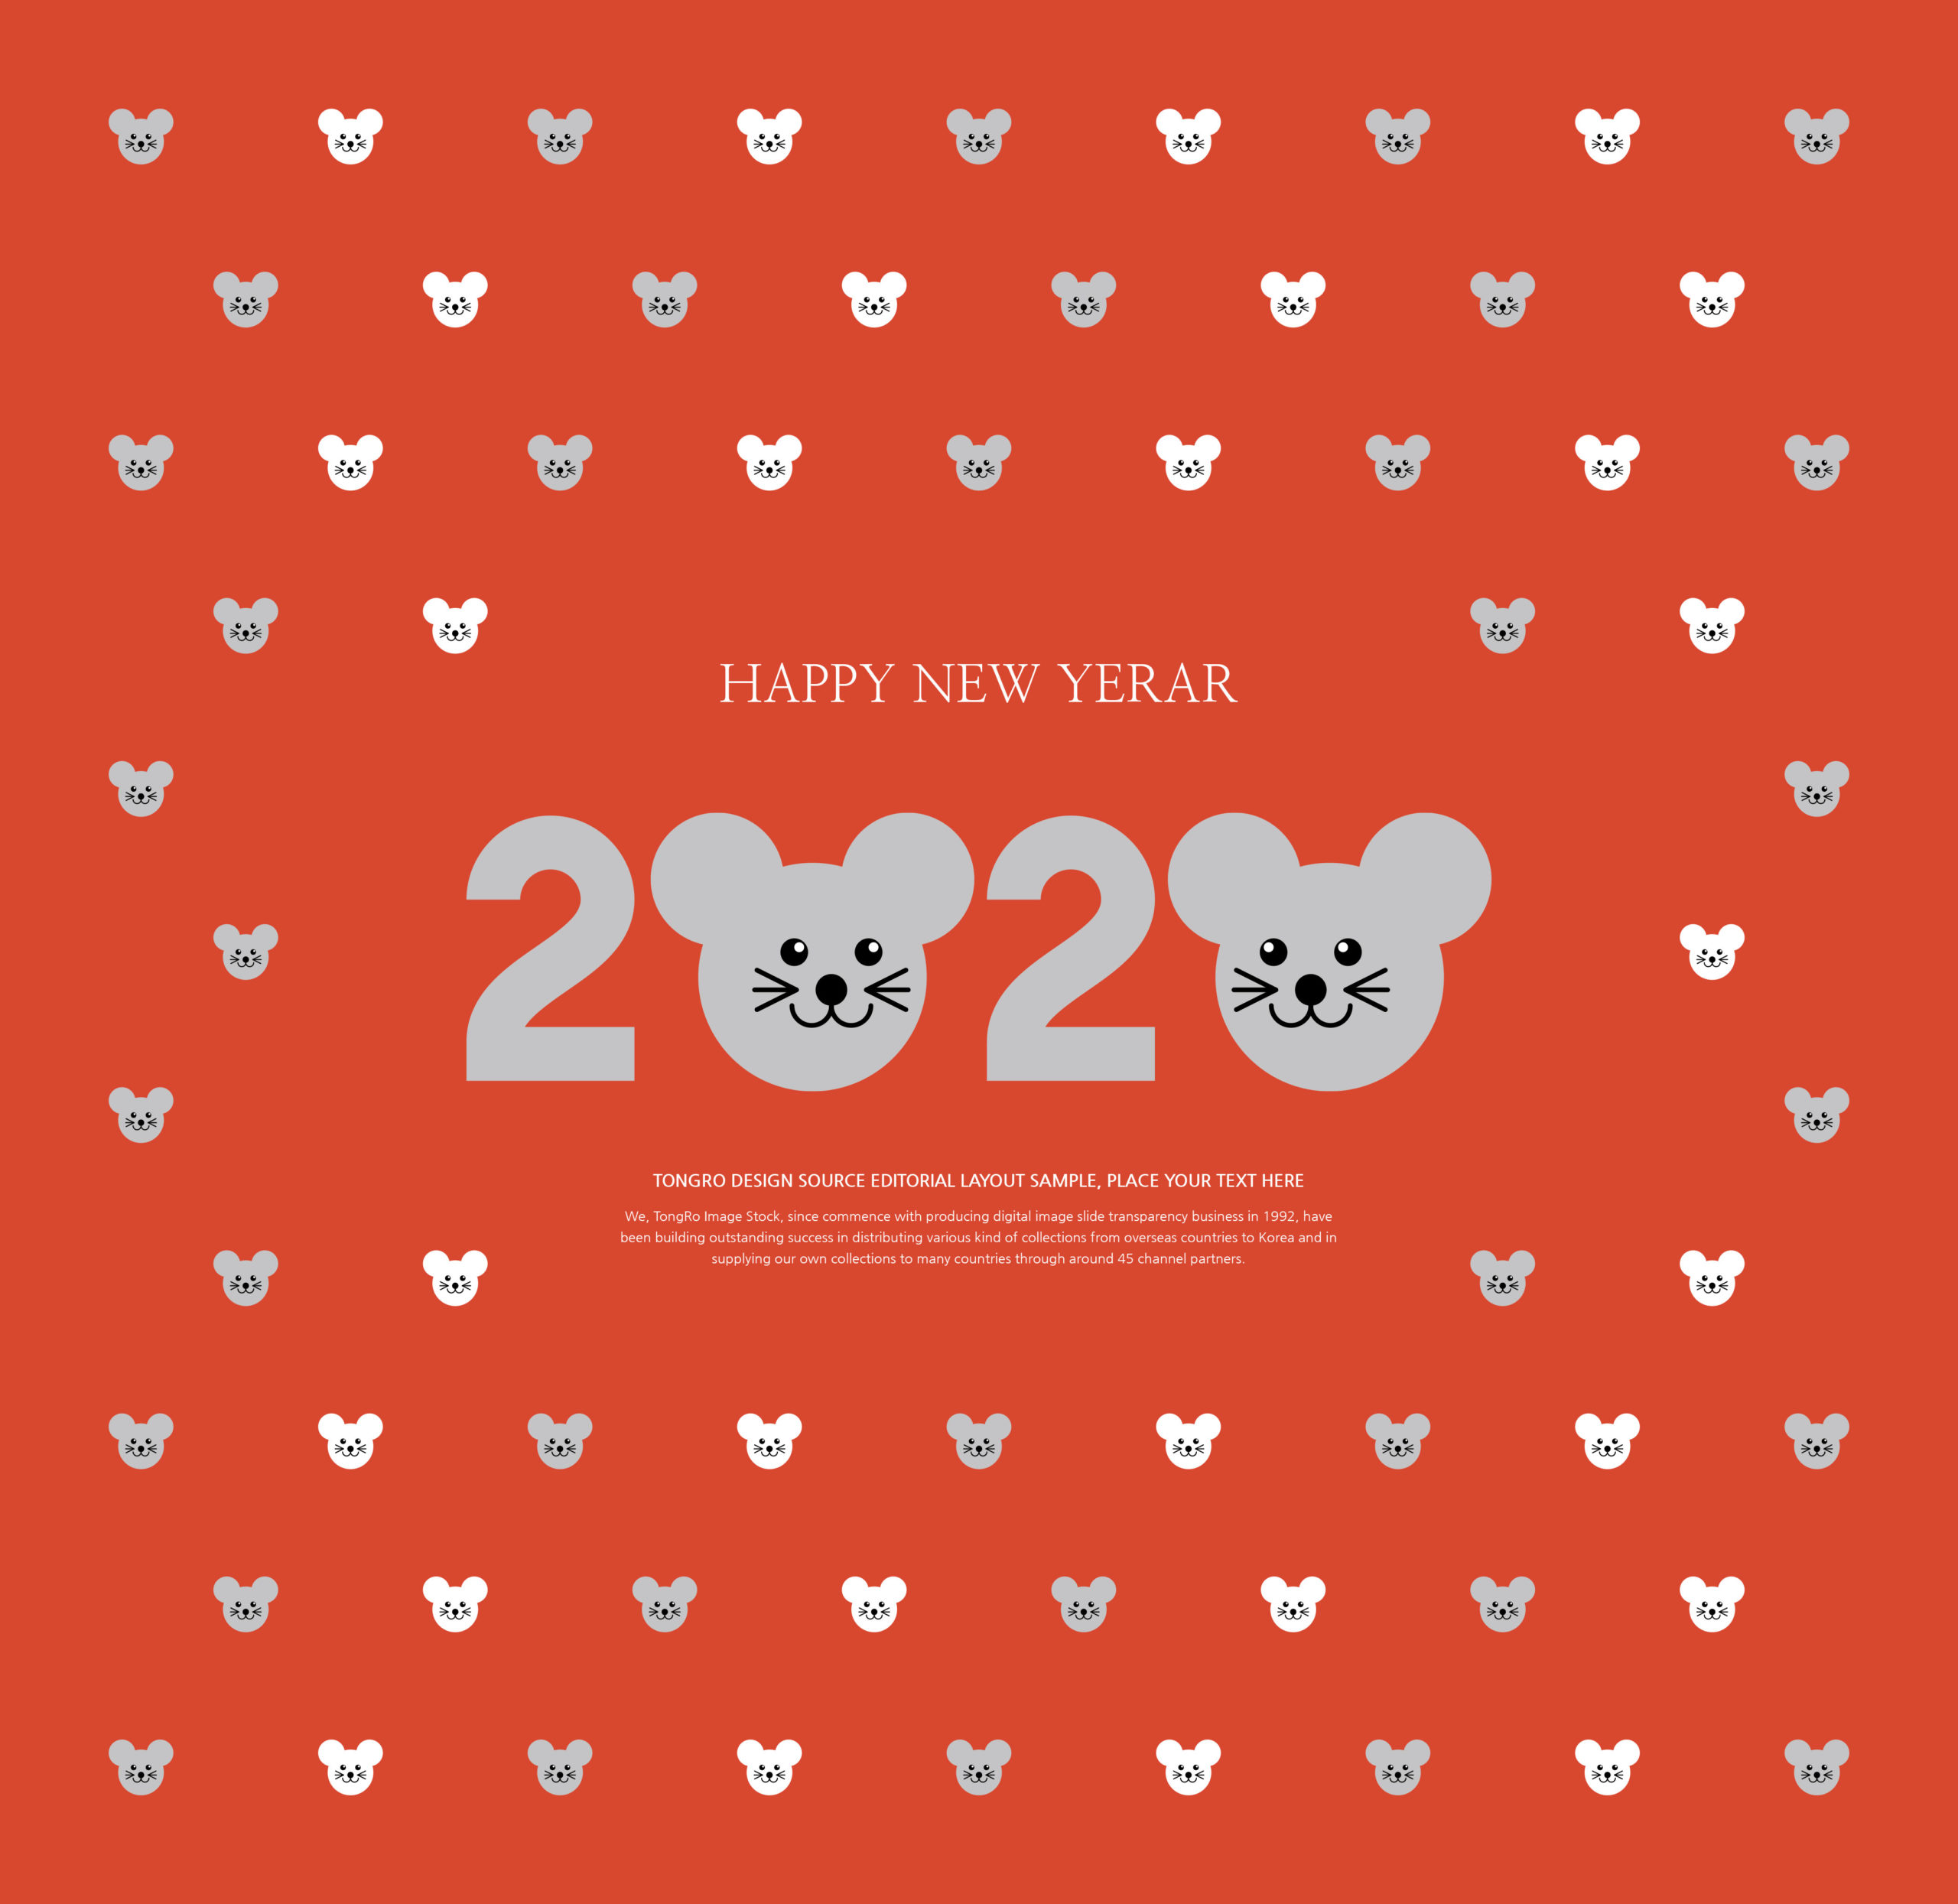 创意可爱的2020鼠年新年快乐祝语方形海报模板套装插图(4)